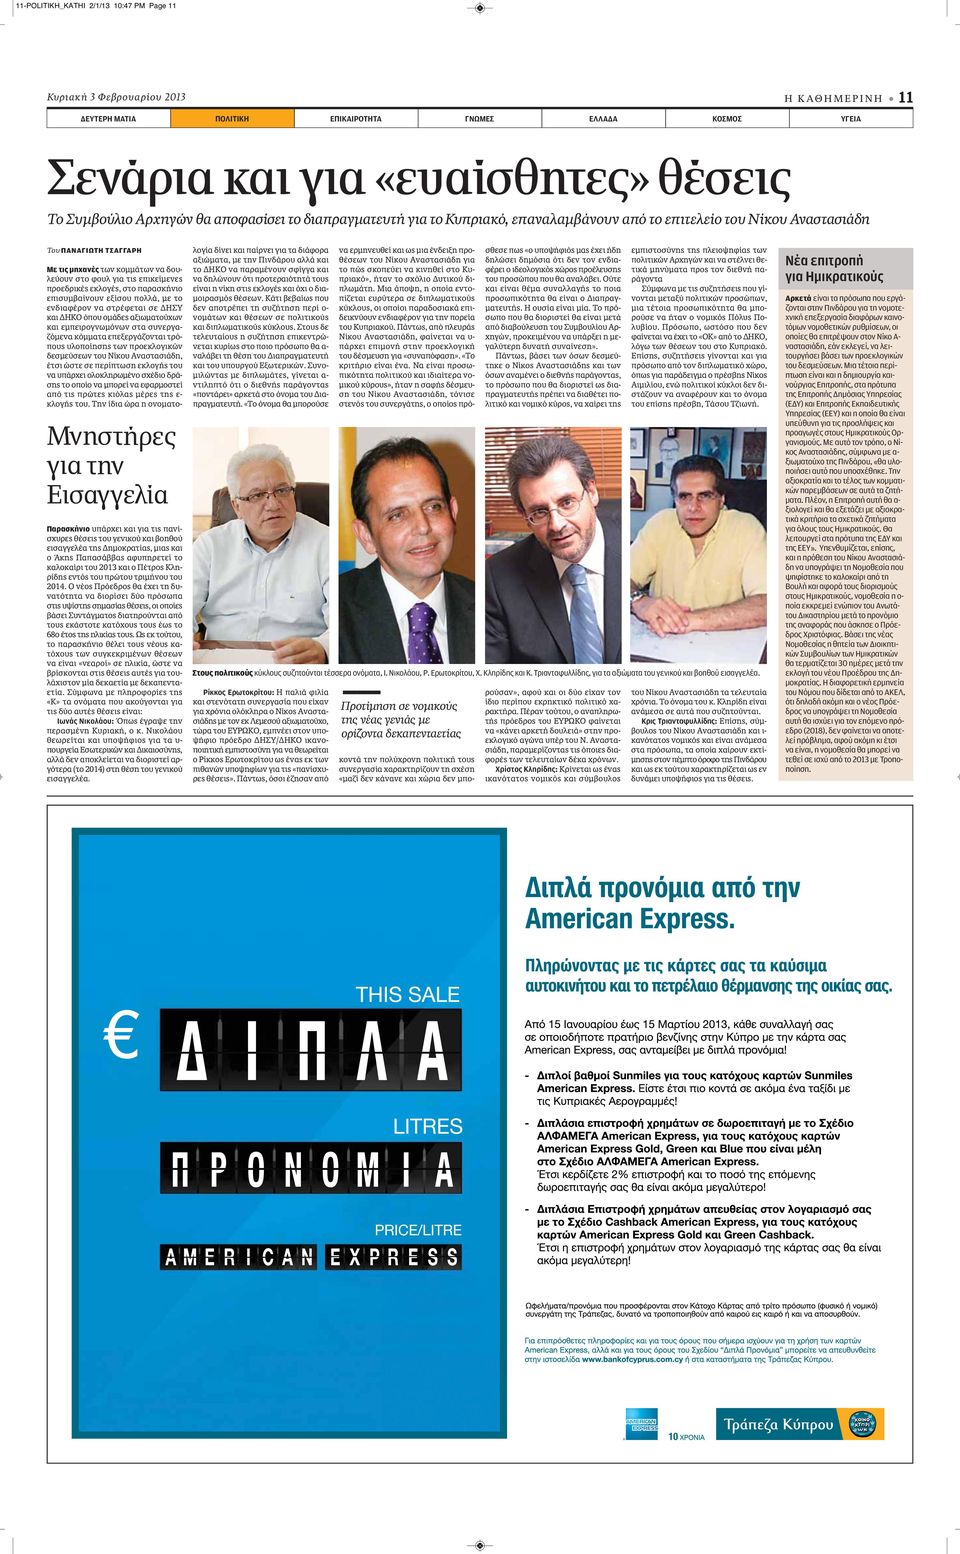 πανίσχυρες θέσεις του γενικού και βοηθού εισαγγελέα της Δημοκρατίας, μιας και ο Άκης Παπασάββας αφυπηρετεί το καλοκαίρι του 2013 και ο Πέτρος Κληρίδης εντός του πρώτου τριμήνου του 2014.